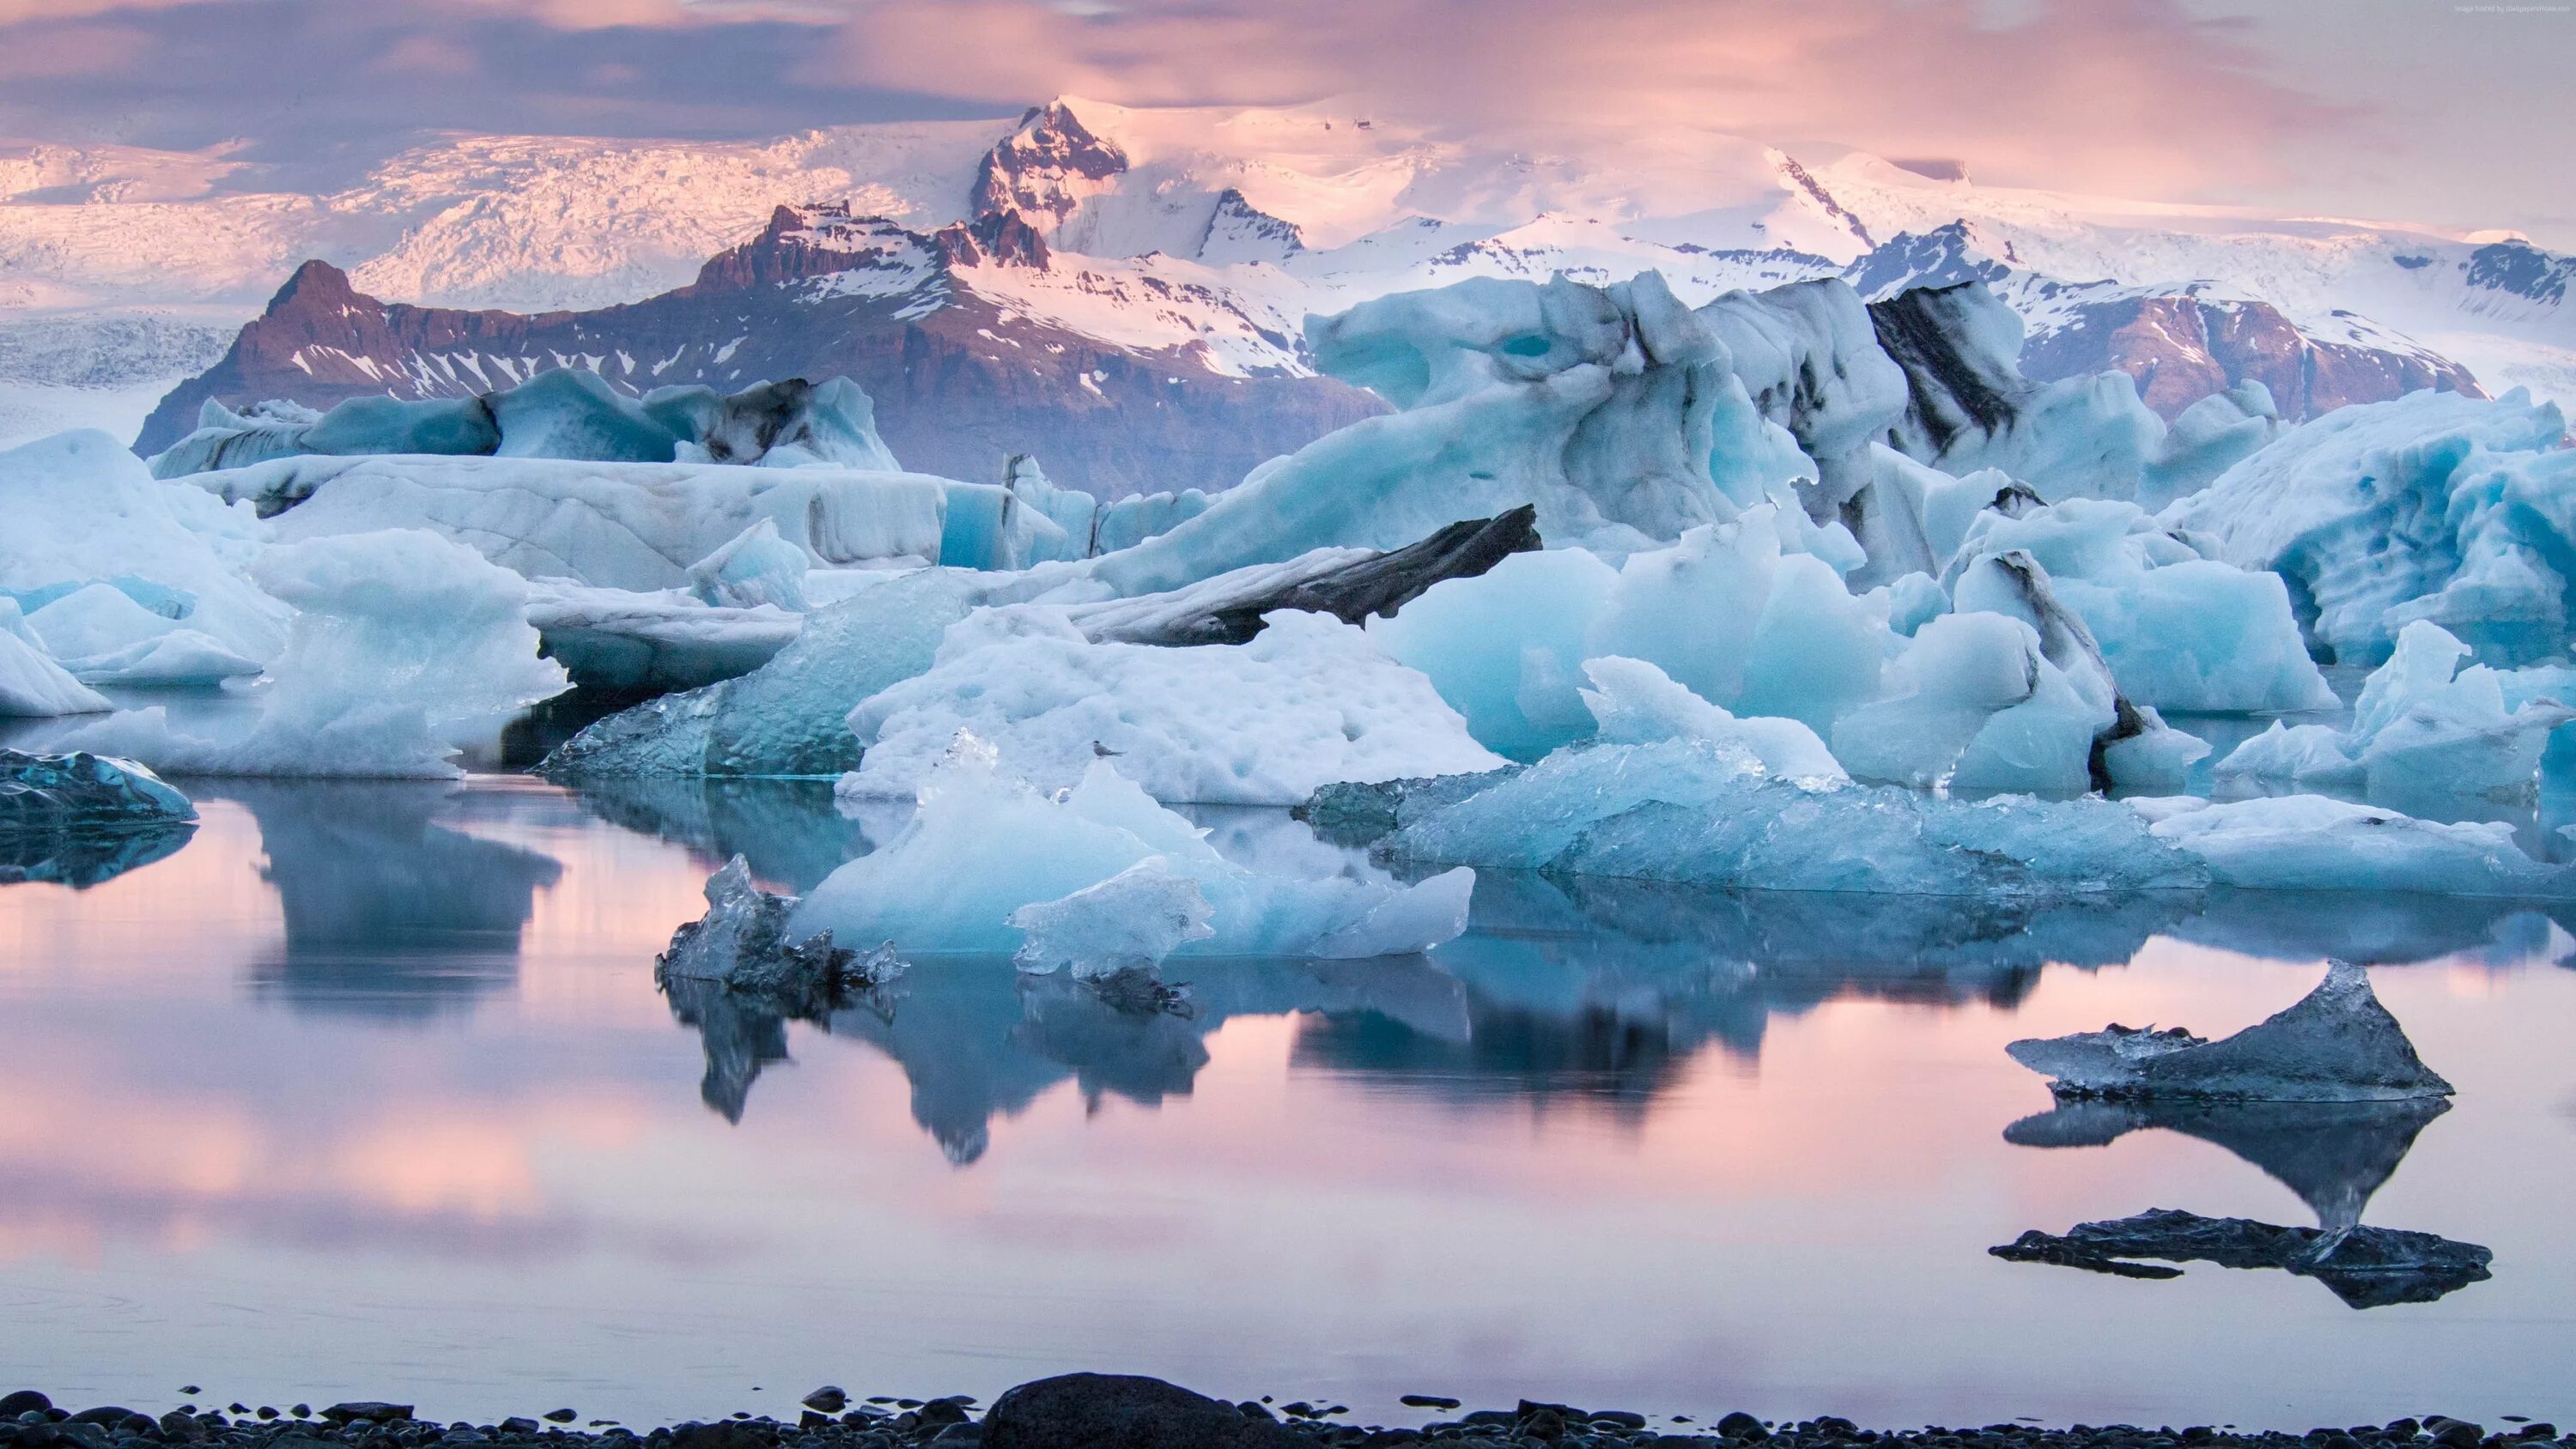 Лагуна ёкюльсаурлоун Исландия. Ледниковая Лагуна Йокульсарлон Исландия. Ледниковое озеро Йокульсарлон в Исландии. Ледник ватнайёкюдль.